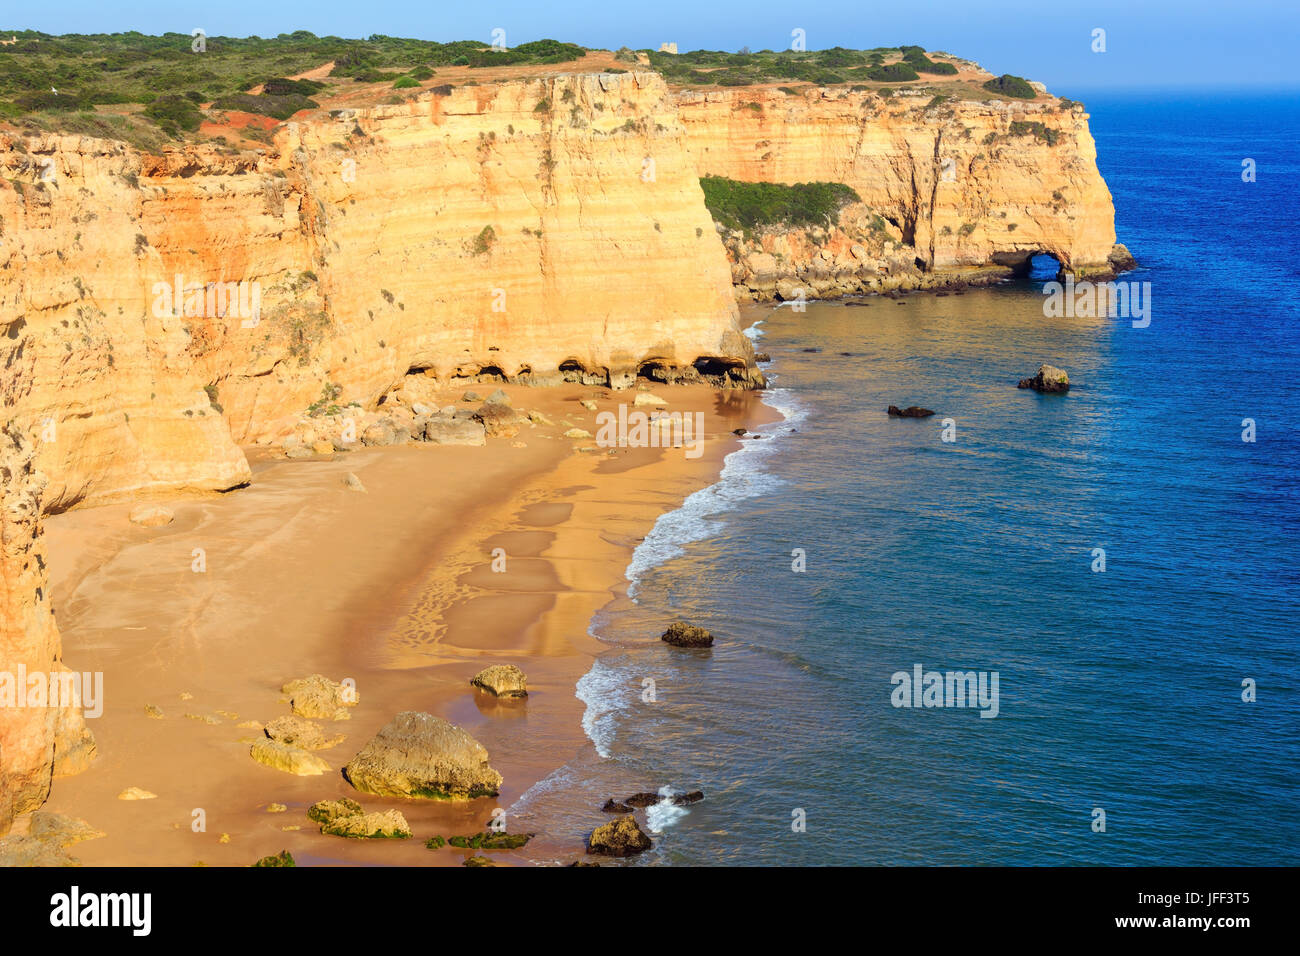 Praia da Afurada (Algarve, Portugal). Stock Photo